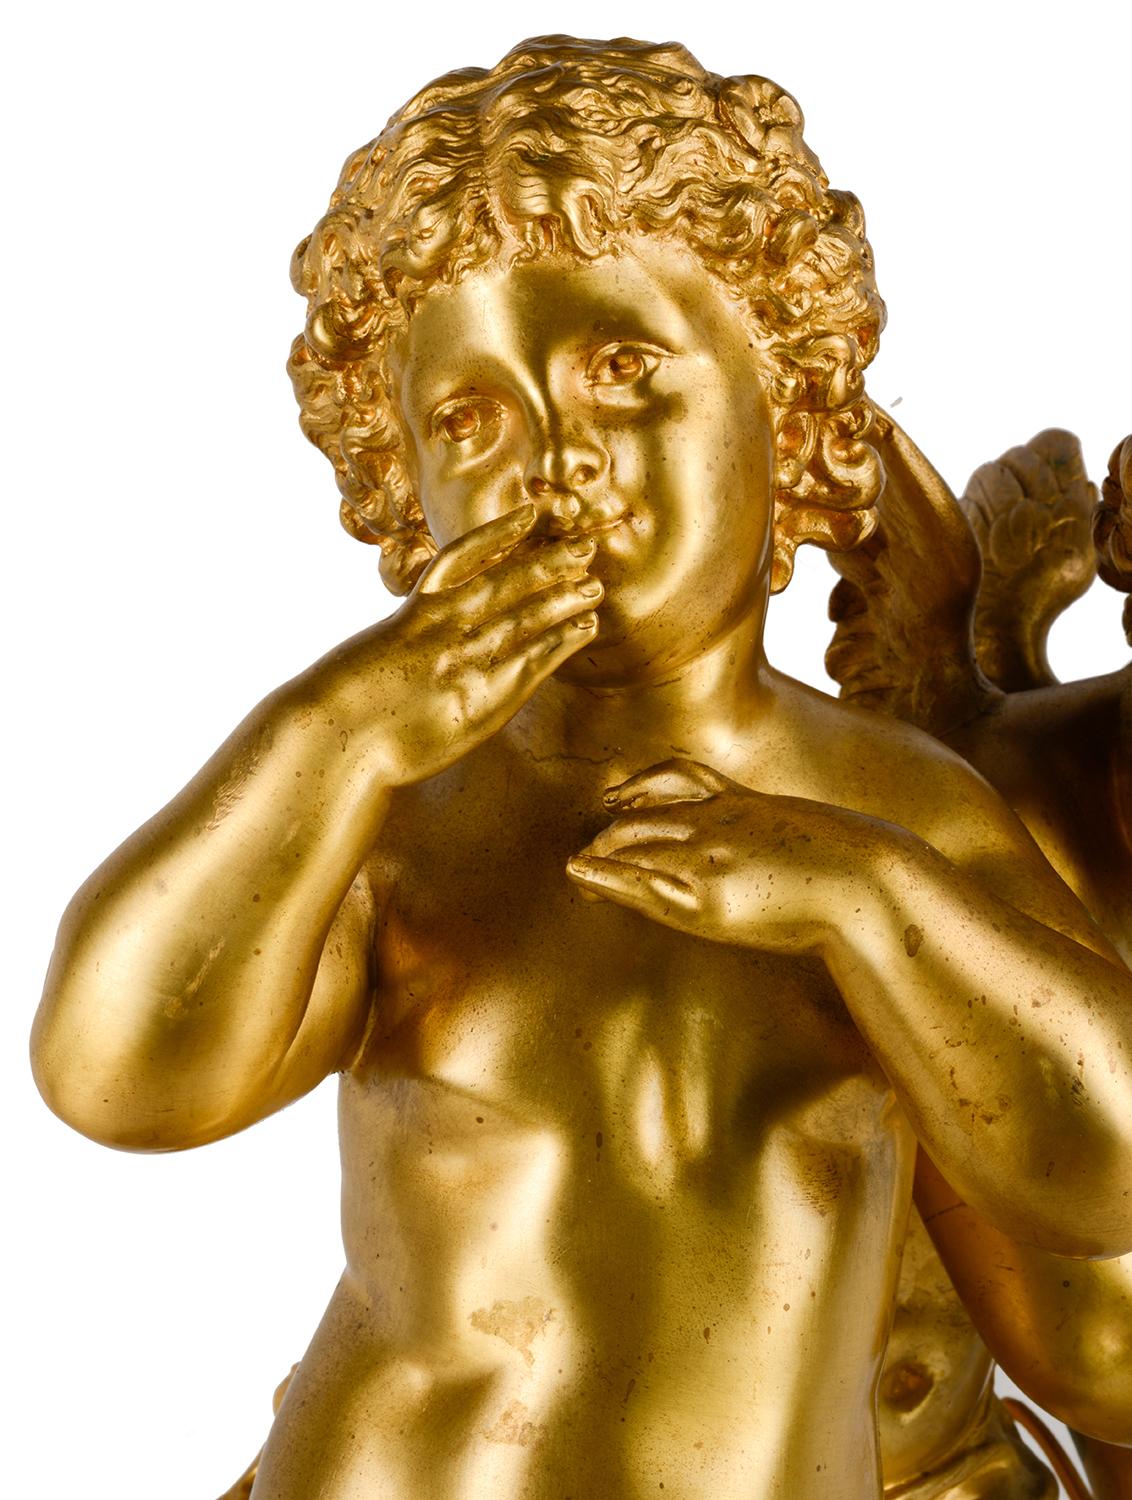 Un groupe de chérubins jouant en bronze doré de très bonne qualité, datant de la fin du 19e siècle, reposant sur une base en marbre noir. Mesures : 50cm (19.5